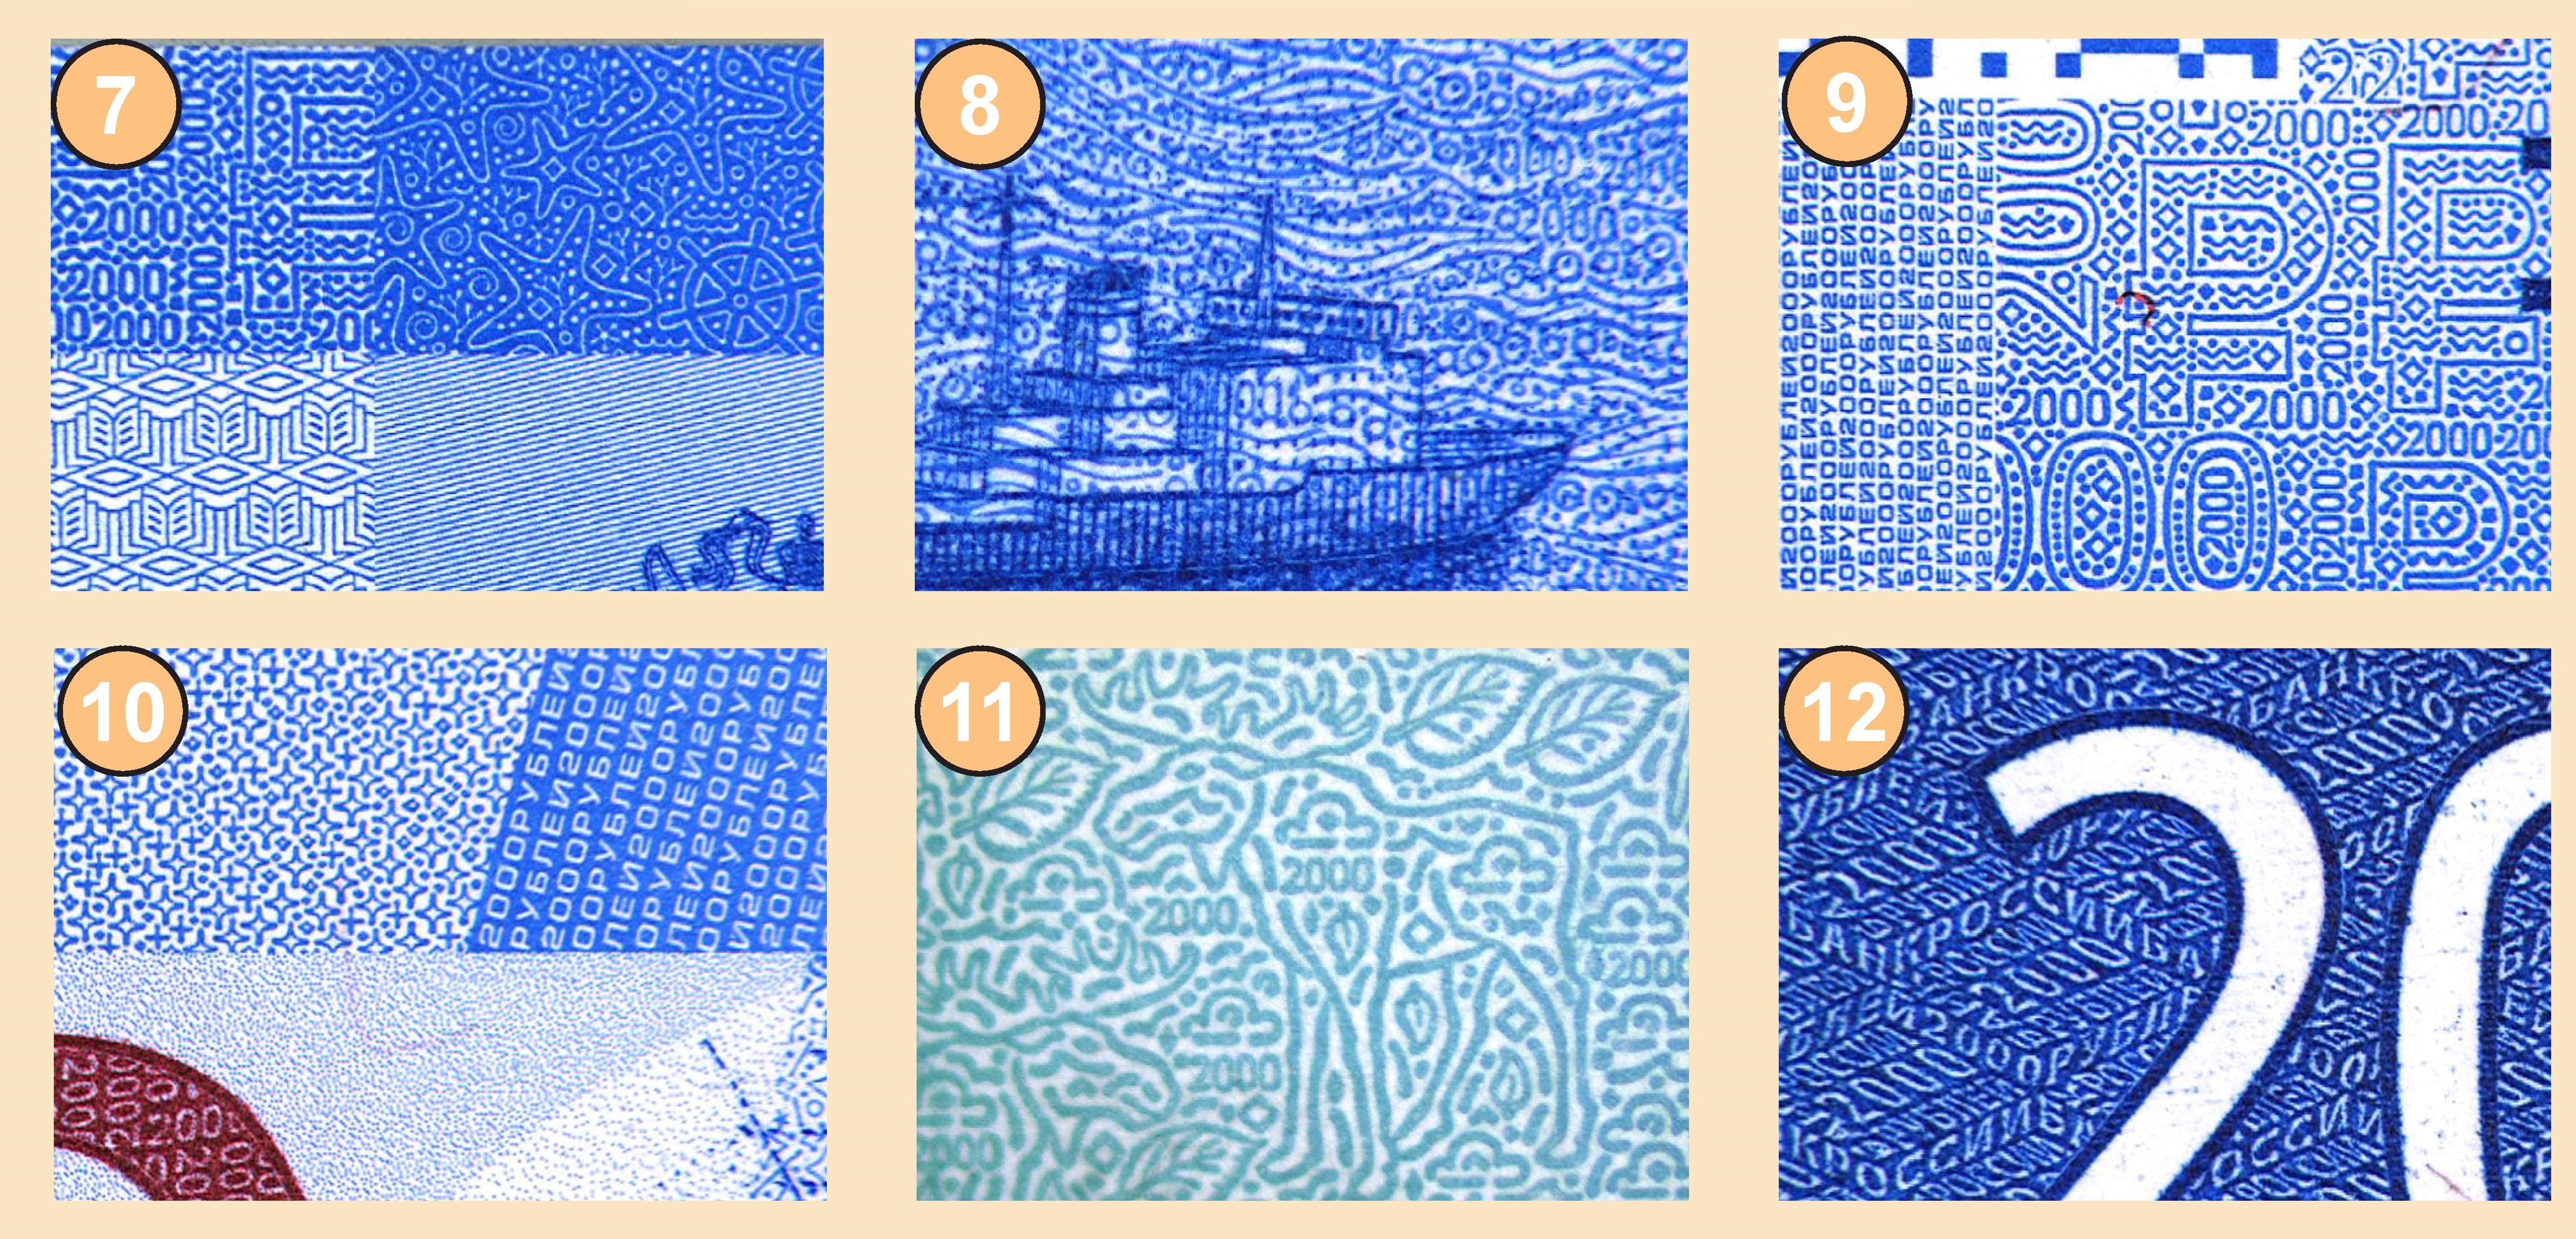 Мелкие графические элементы на банкнотах